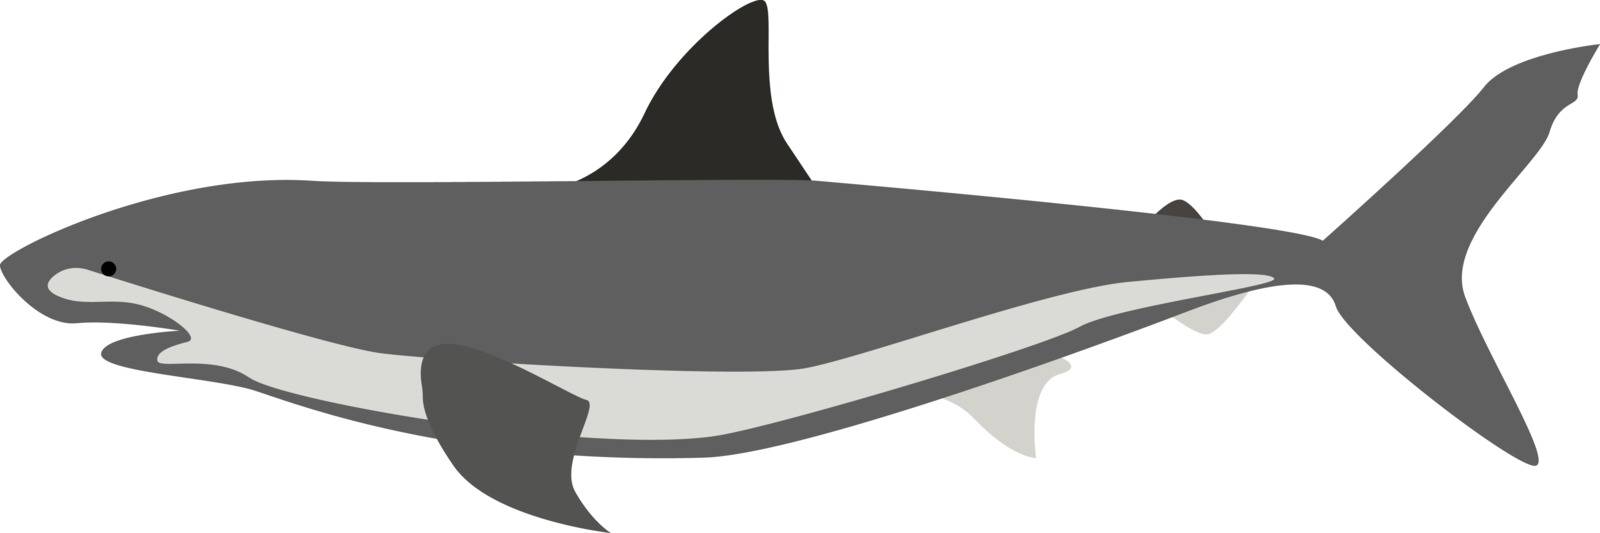 Shark, illustration, vector on white background.